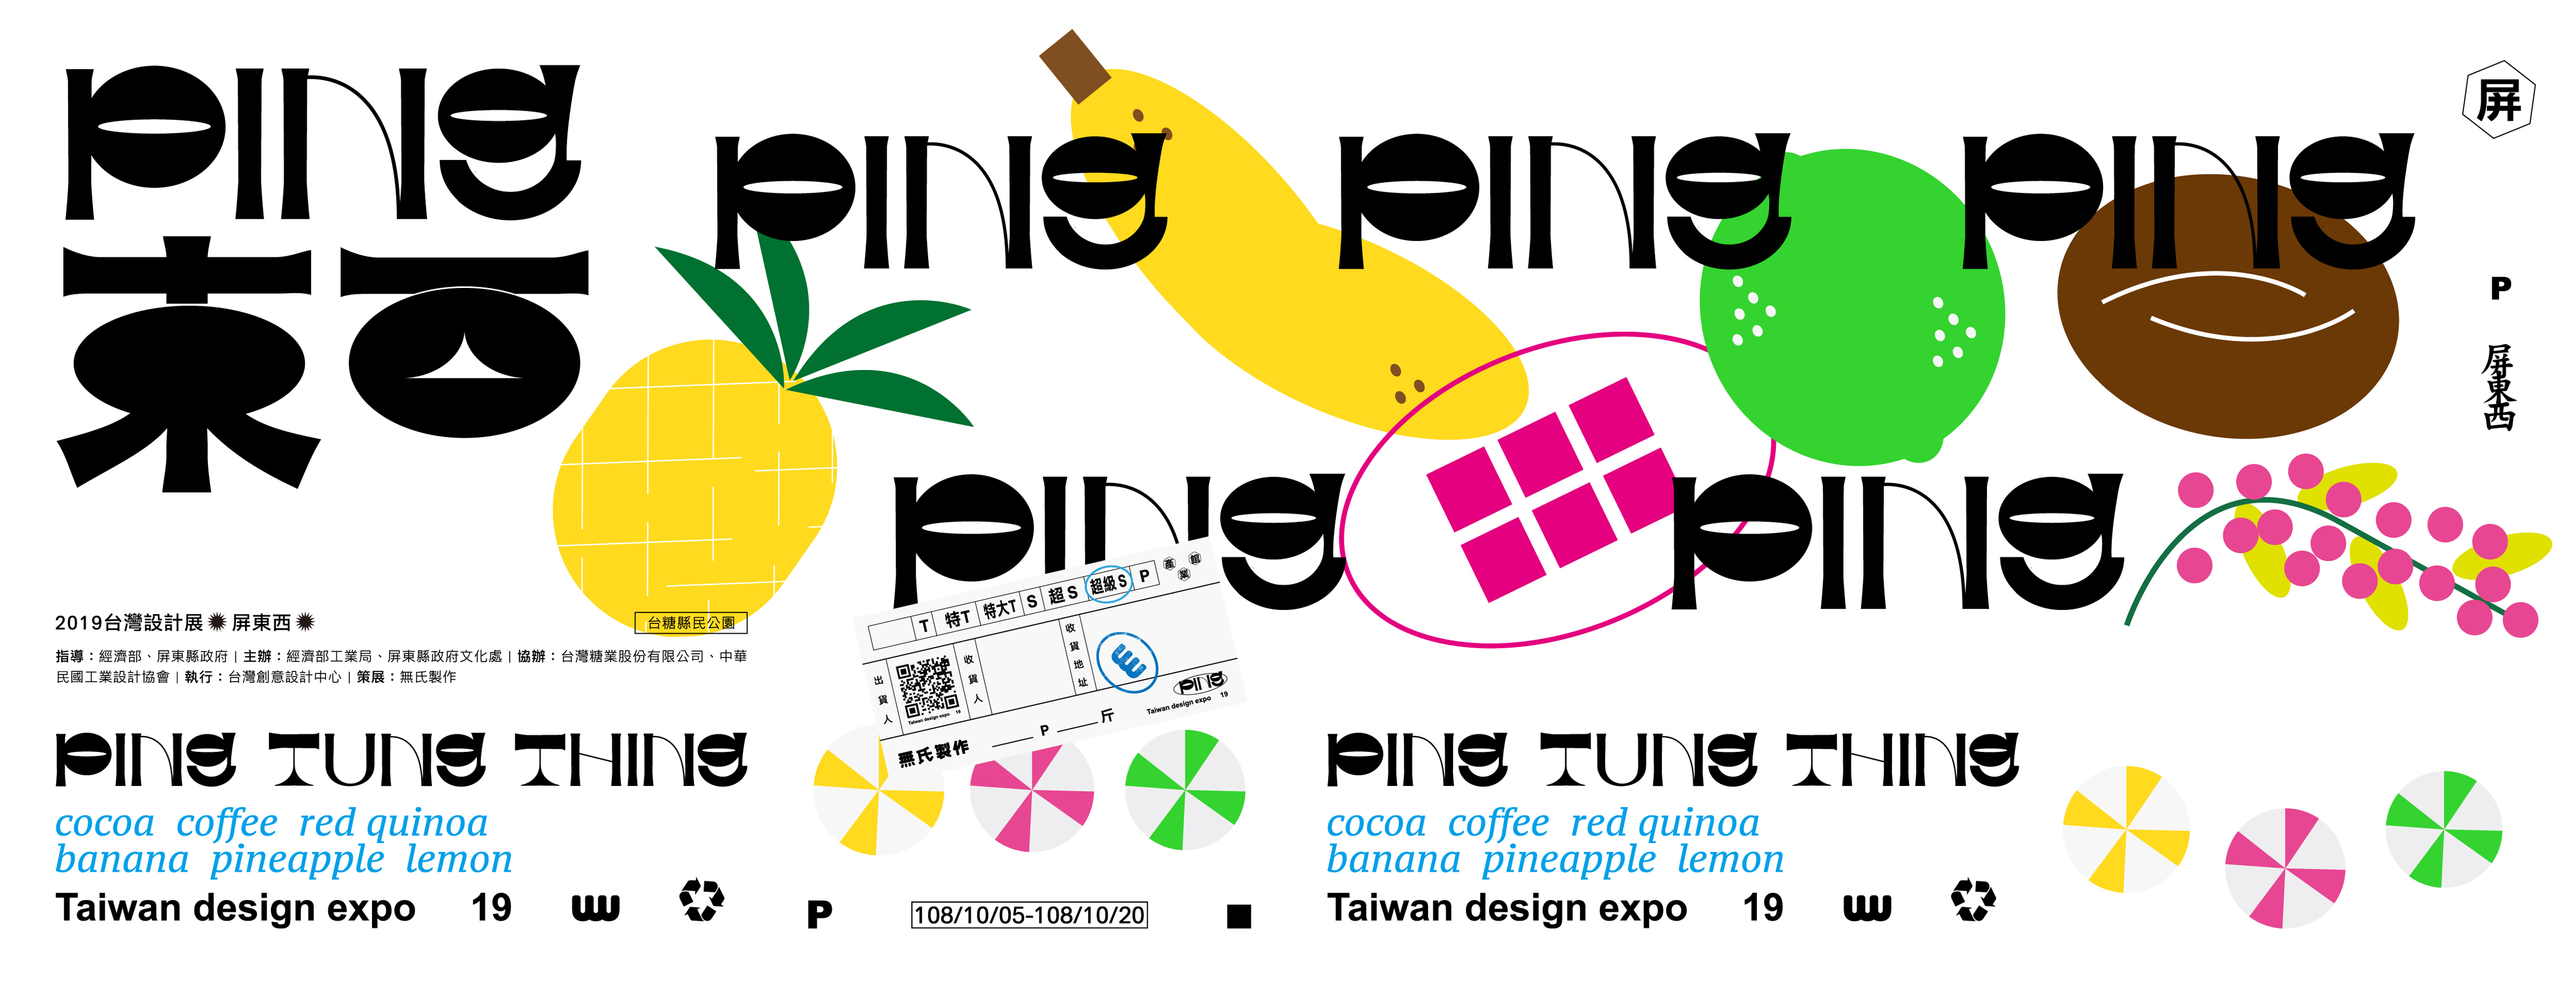 PING TUNG THING - 2019 Taiwan Design Expo